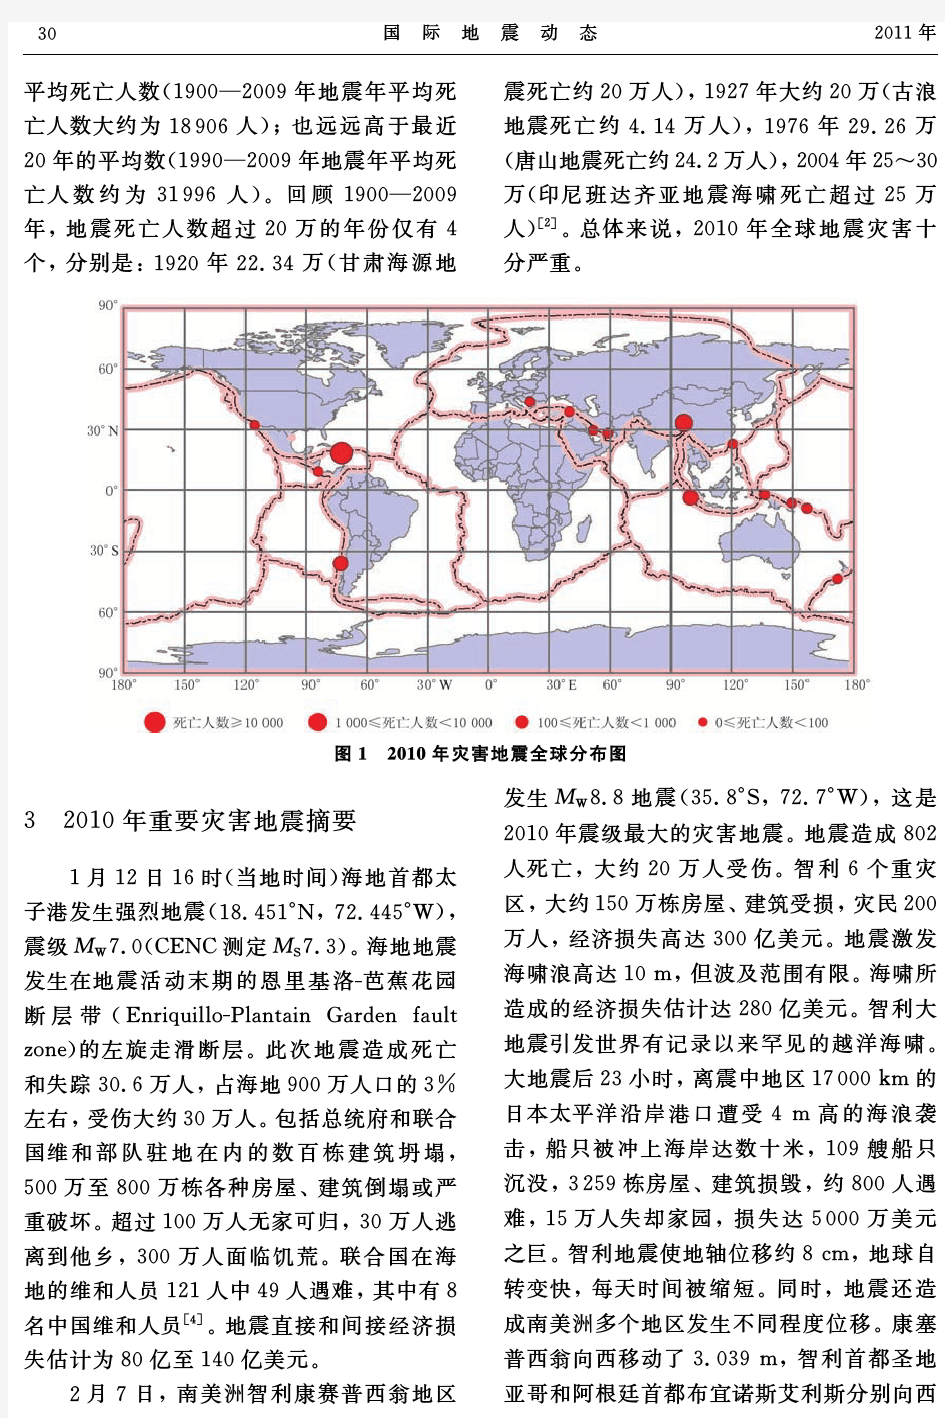 2010年全球地震活动性和地震灾害概要